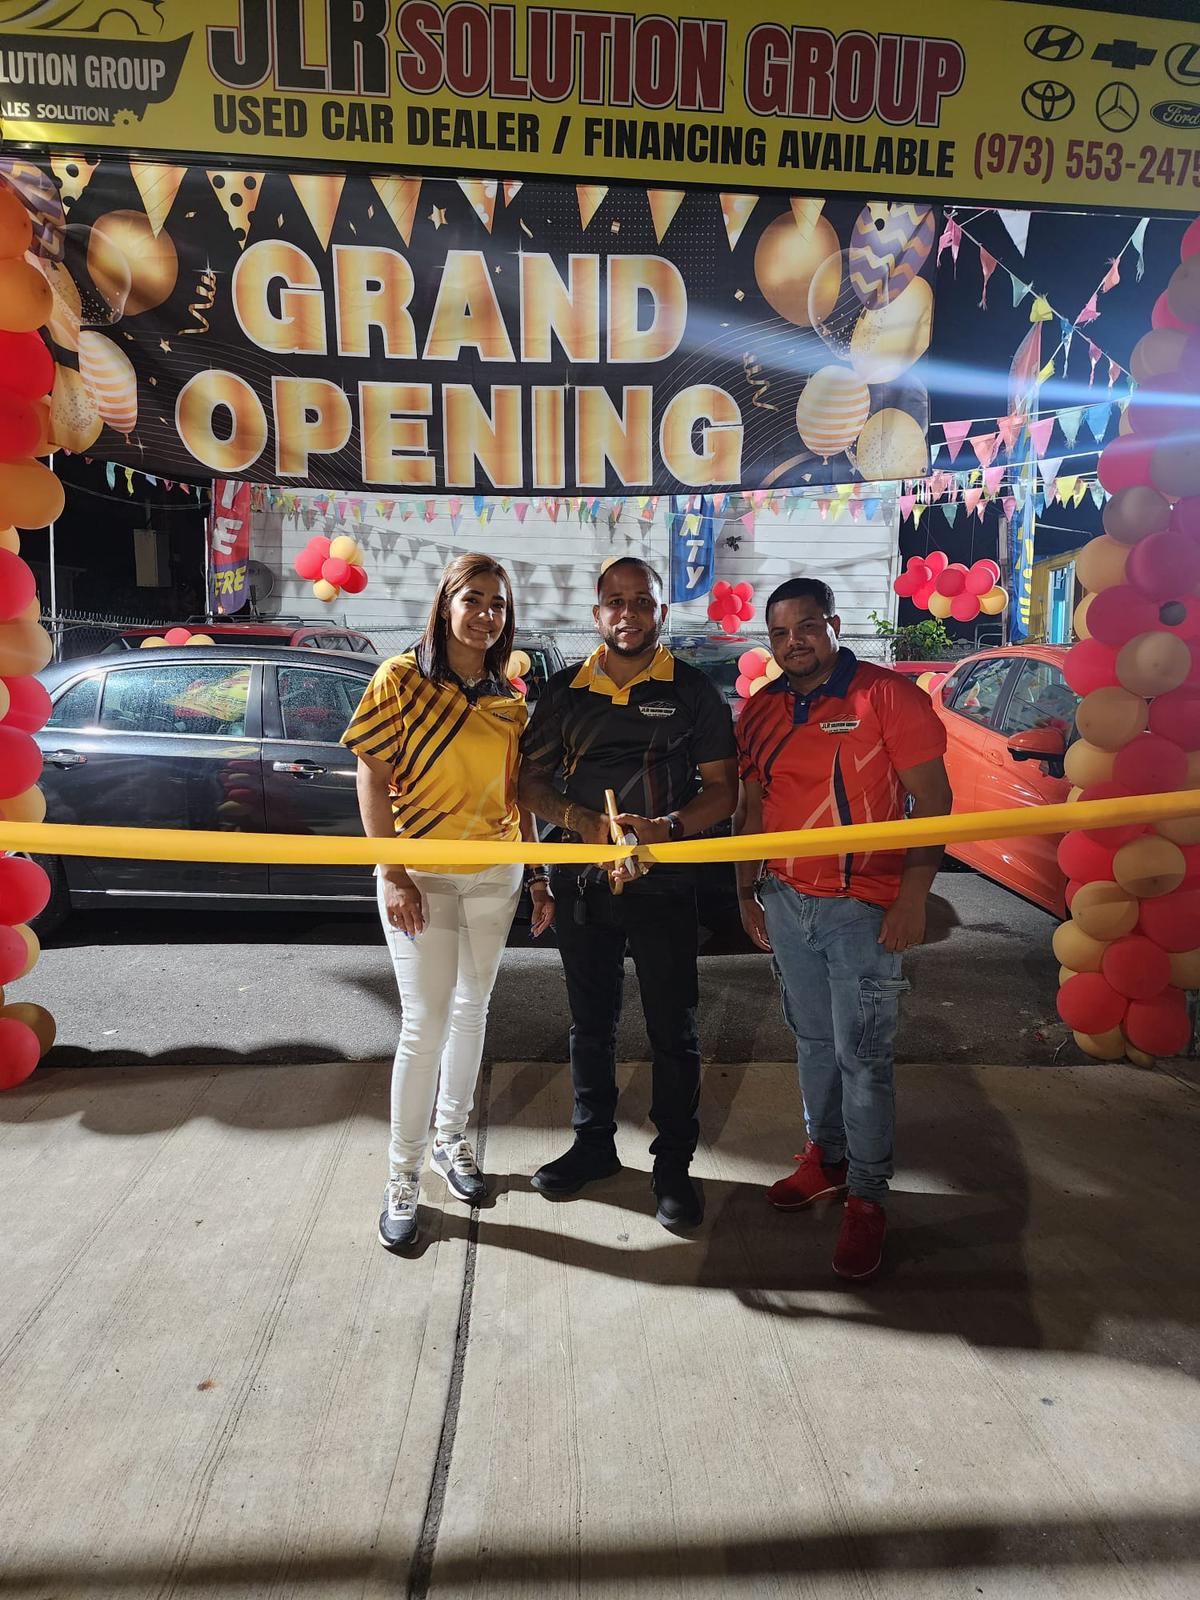 Inauguración del Dealer JLR Solución Group: Un Ejemplo de Éxito Emprendedor de la Comunidad Dominicana en Patterson, NJ